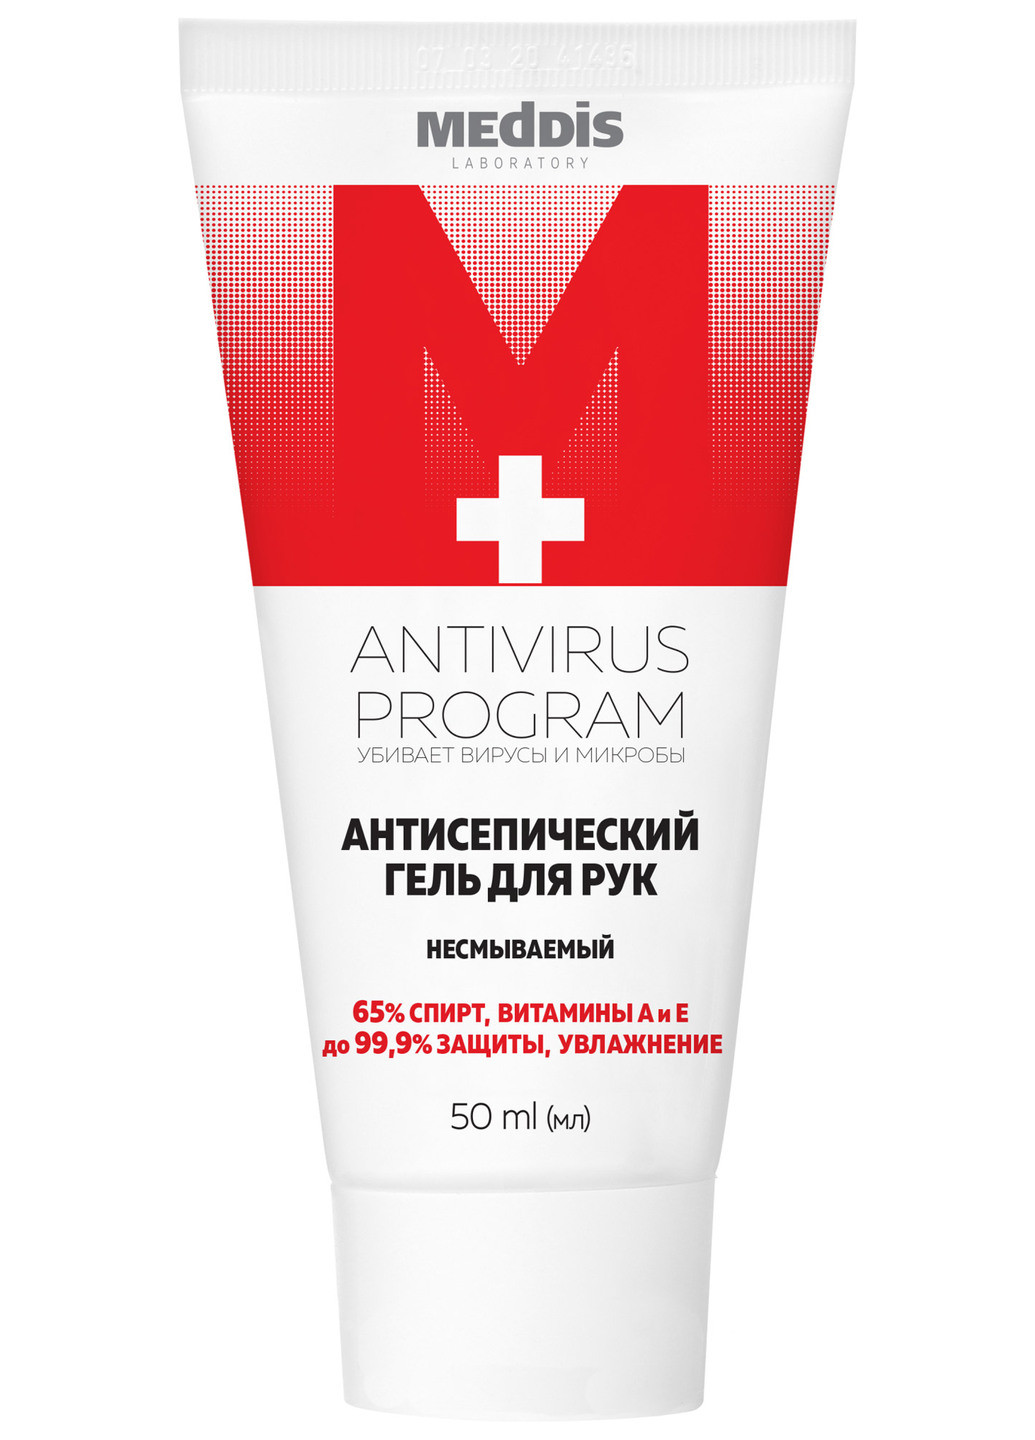 Антисептический гель для рук Antivirus Program 50 мл MedDis (202227760)